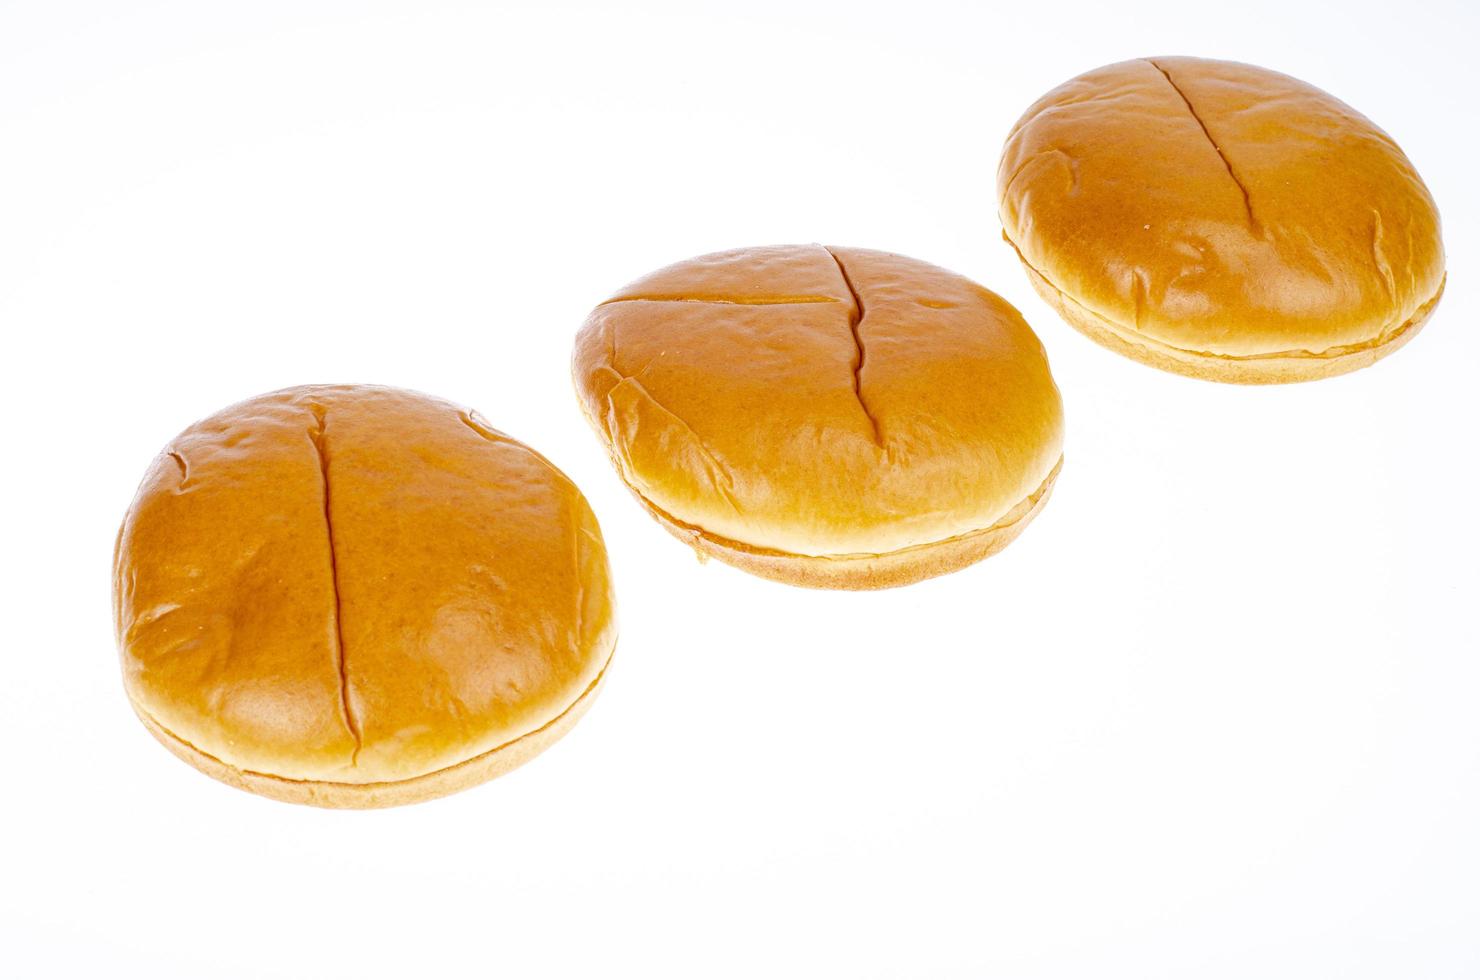 pains à hamburger ronds isolés sur fond blanc. photo d'atelier.